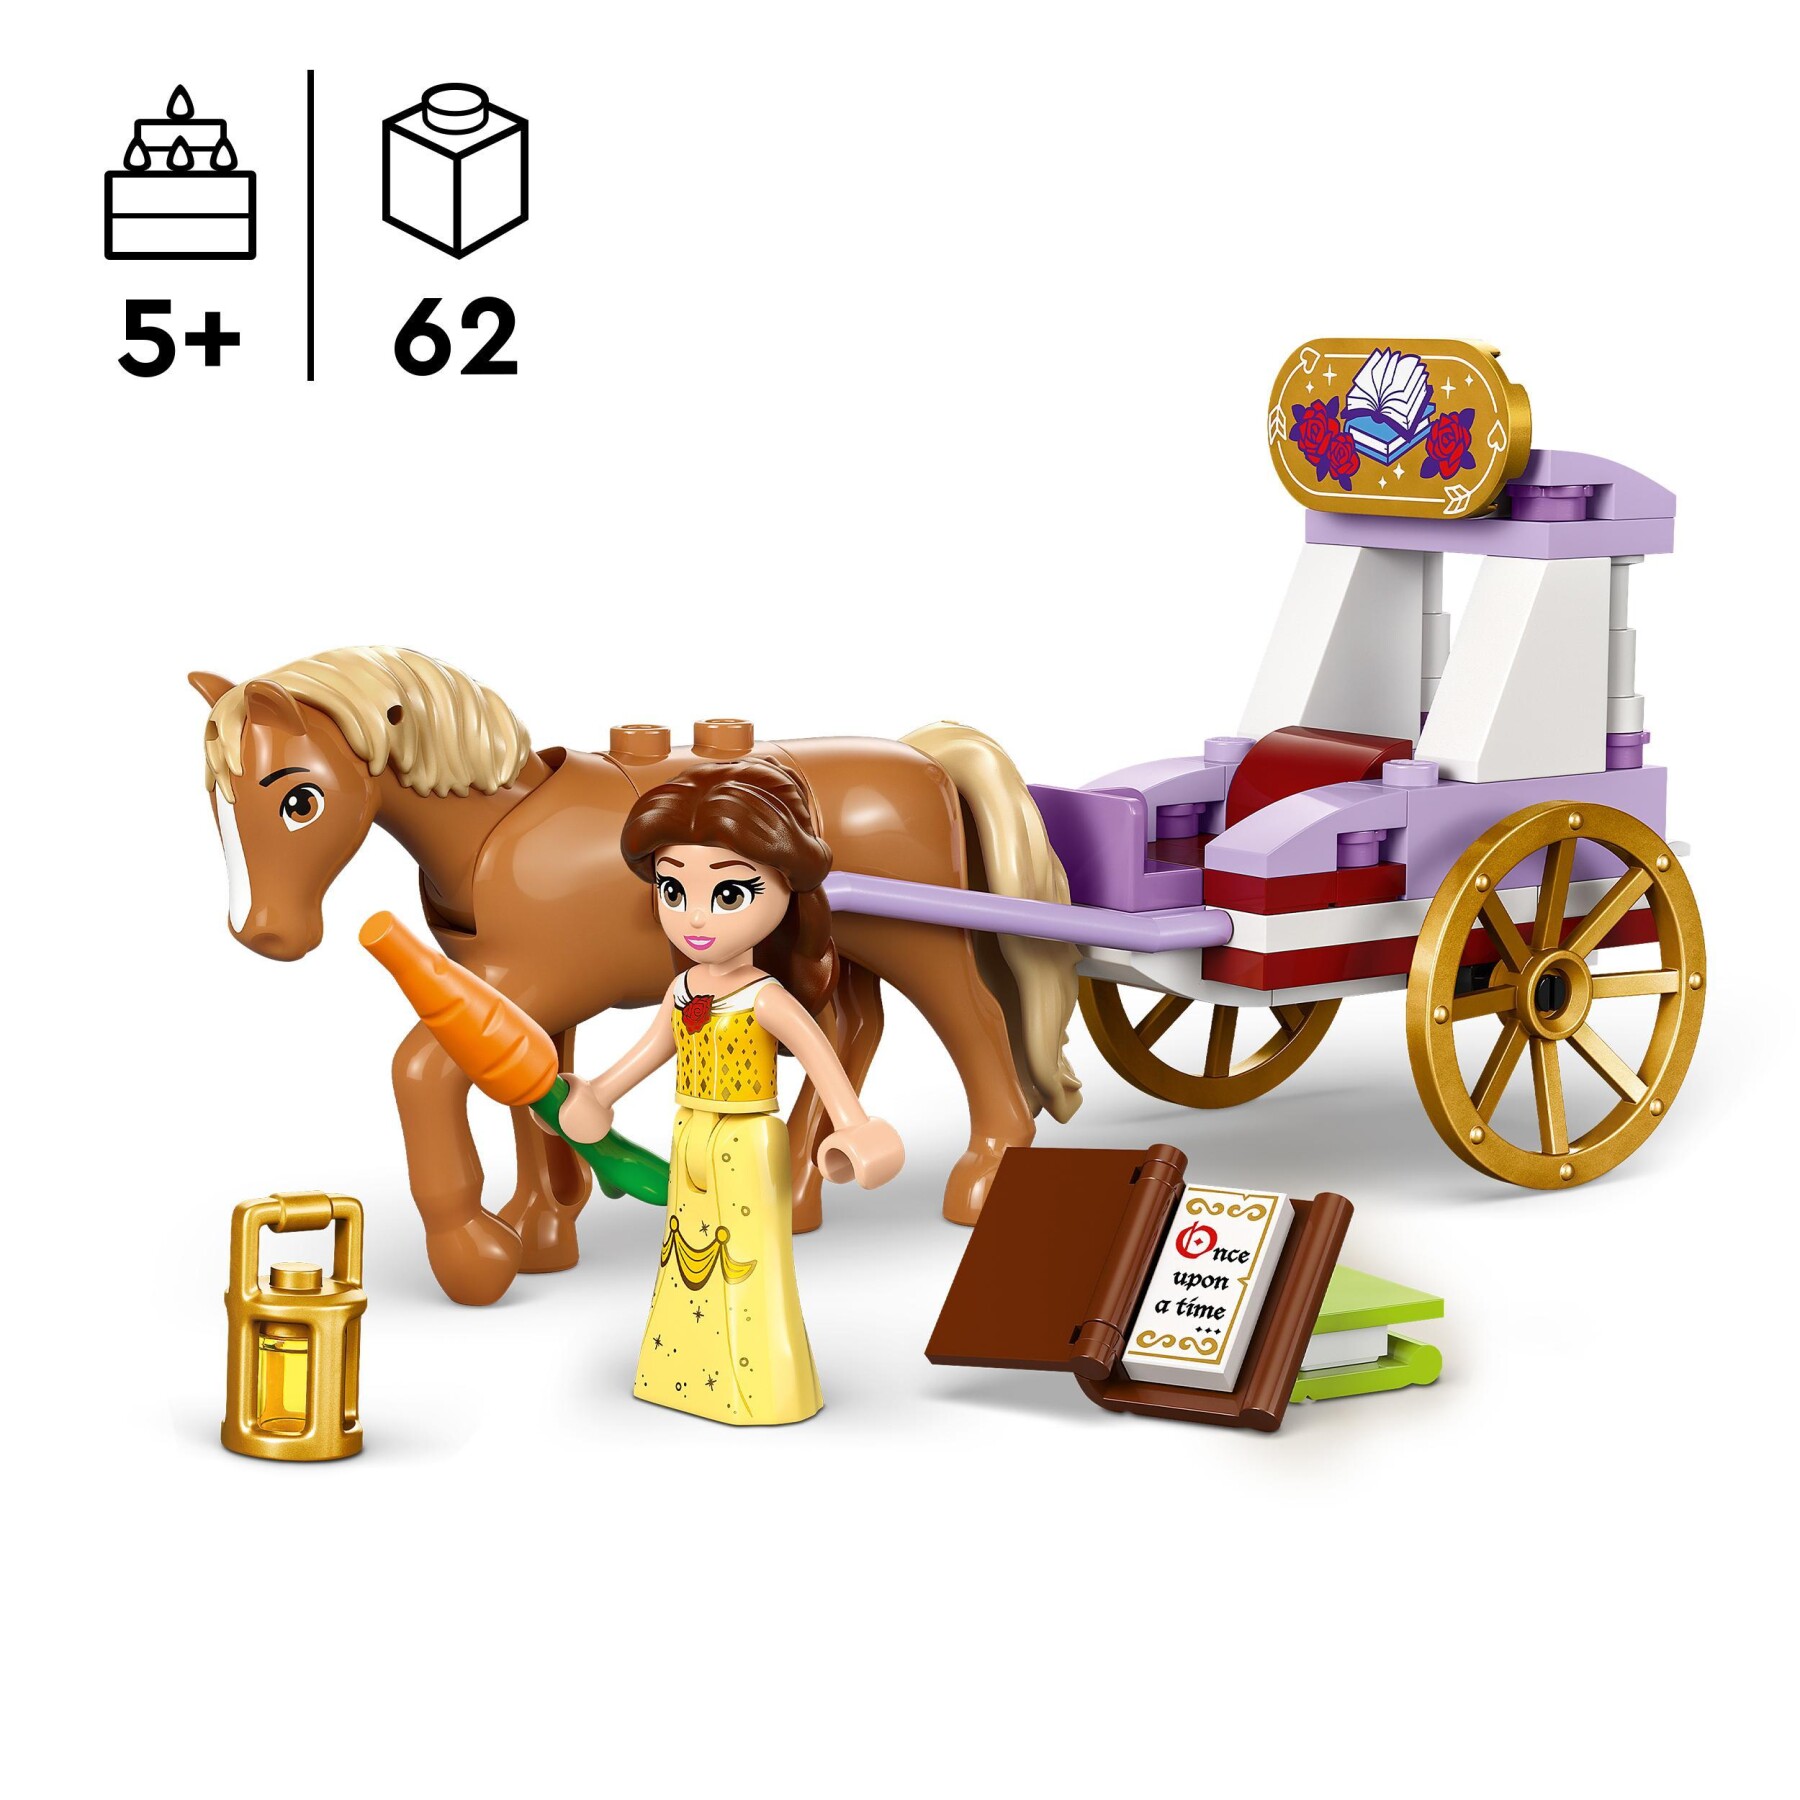 Lego disney princess 43233 la carrozza dei cavalli di belle, giochi principesse per bambini di 5+ anni da la bella e la bestia - DISNEY PRINCESS, LEGO DISNEY PRINCESS